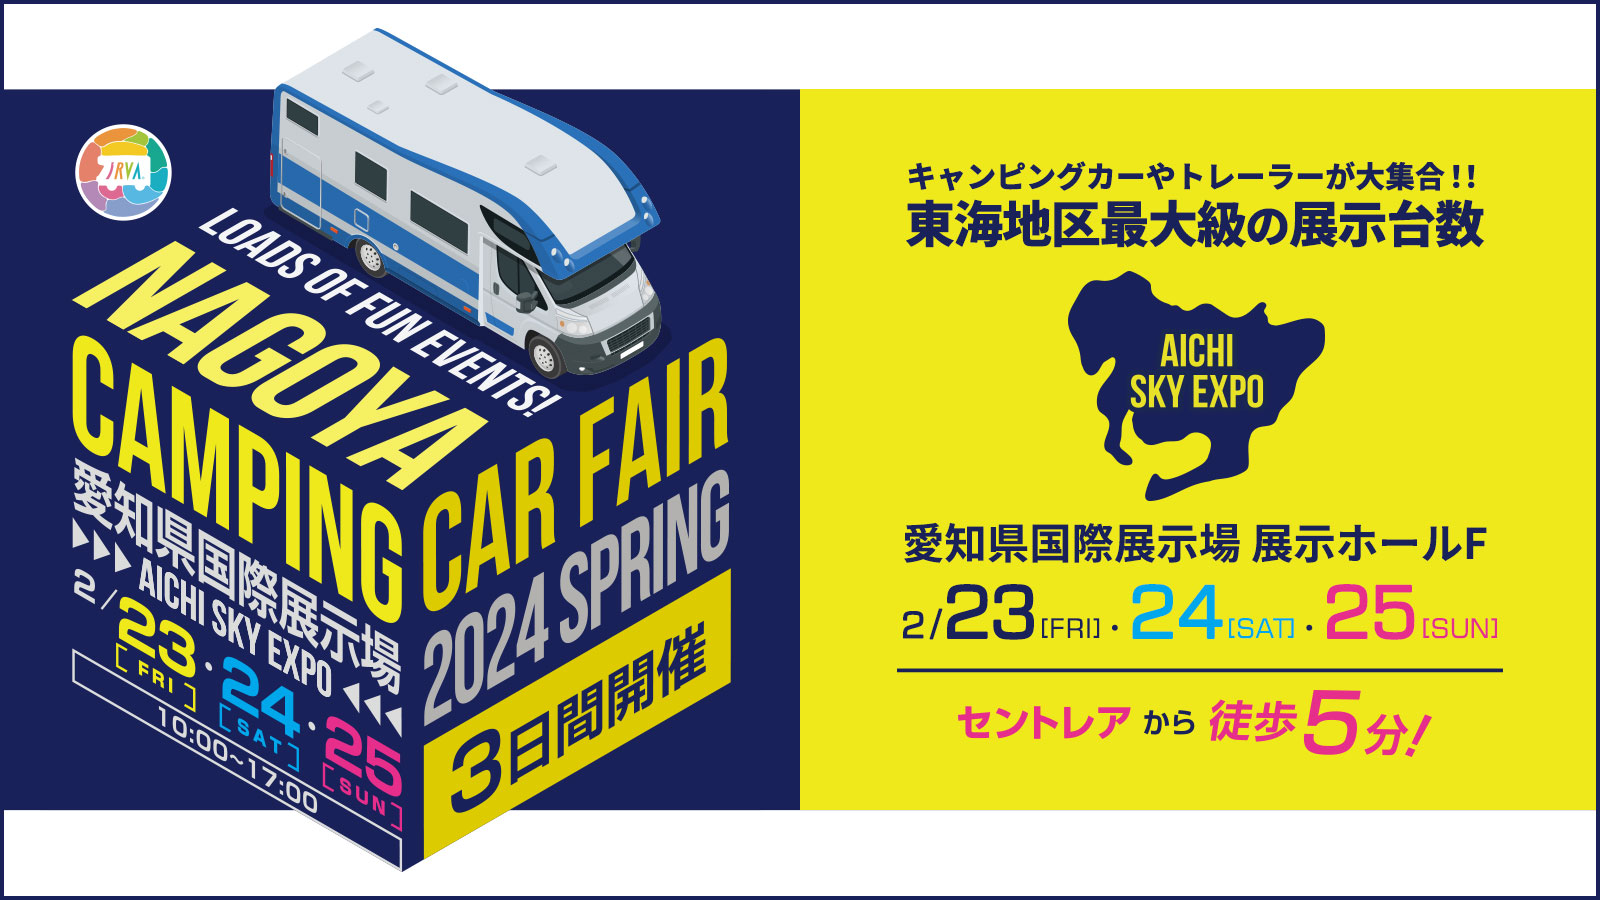 名古屋キャンピングカーフェア2024に出展!!